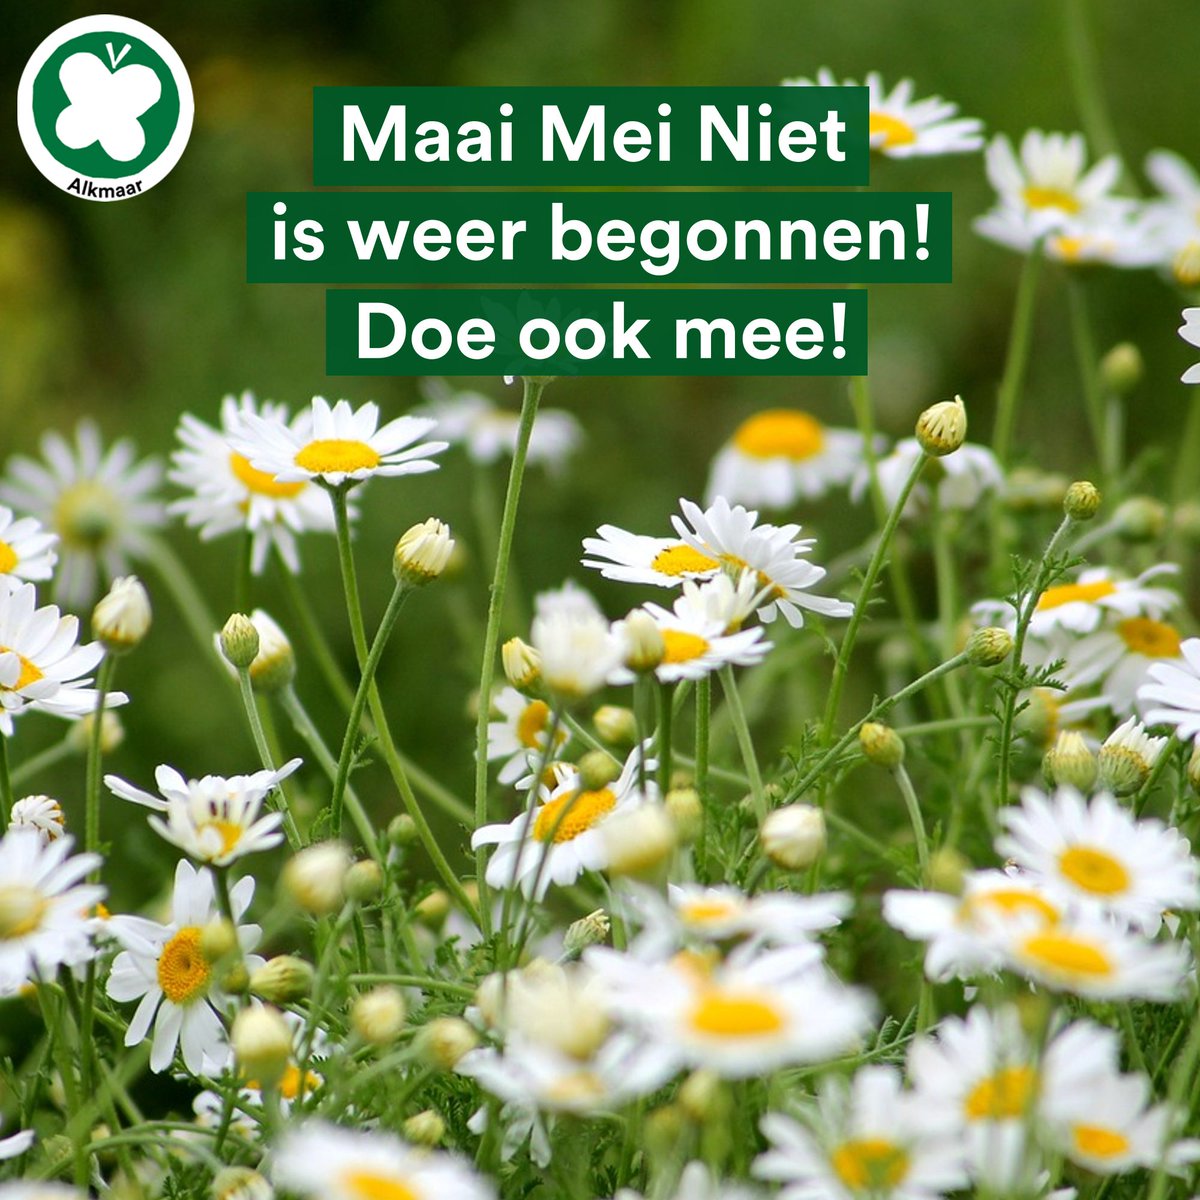 Het is weer mei! En dat betekent dat #Maaimeiniet weer is begonnen! 🌼#Insecten hebben het door #pesticiden en de afname van #natuur en biologische #bloemen erg zwaar in Nederland. Om hen een handje te helpen vragen wij jou om even een maandje helemaal niets te doen. (1/2)